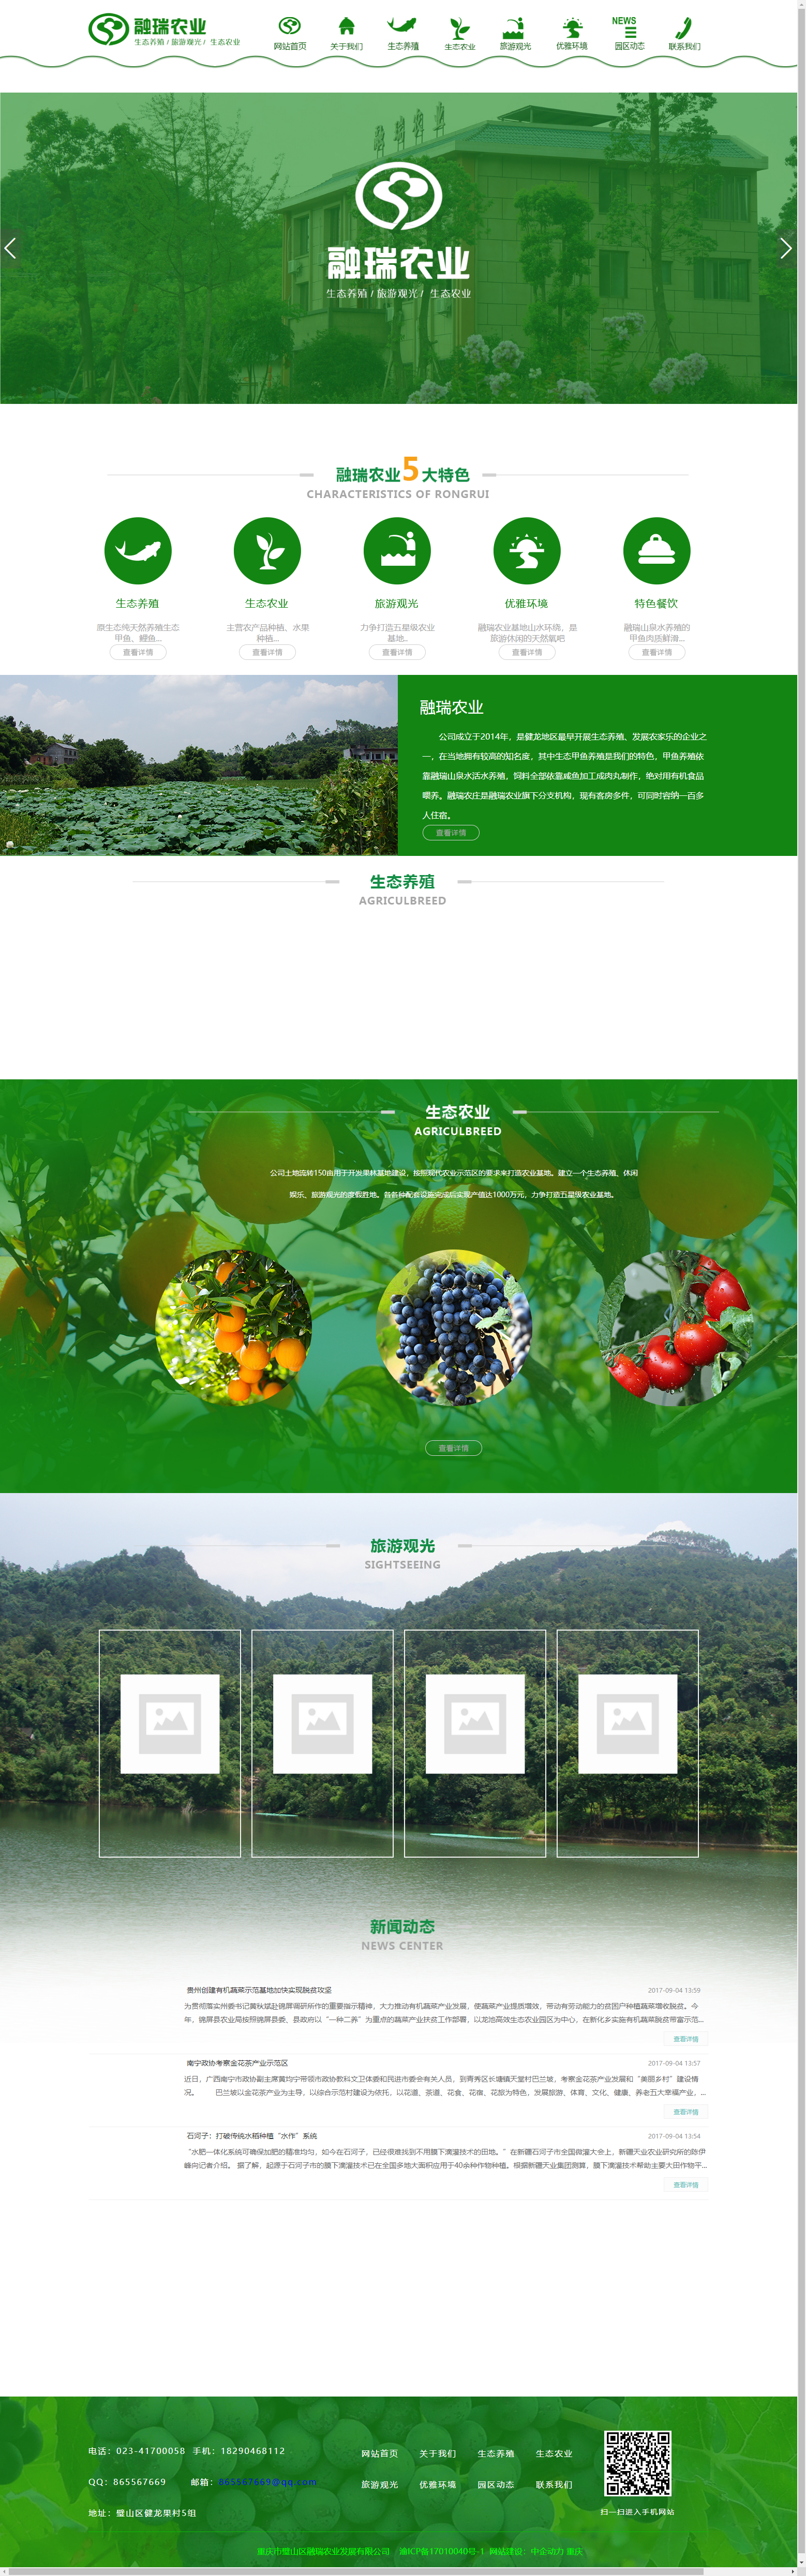 重庆市璧山区融瑞农业发展有限公司网站案例